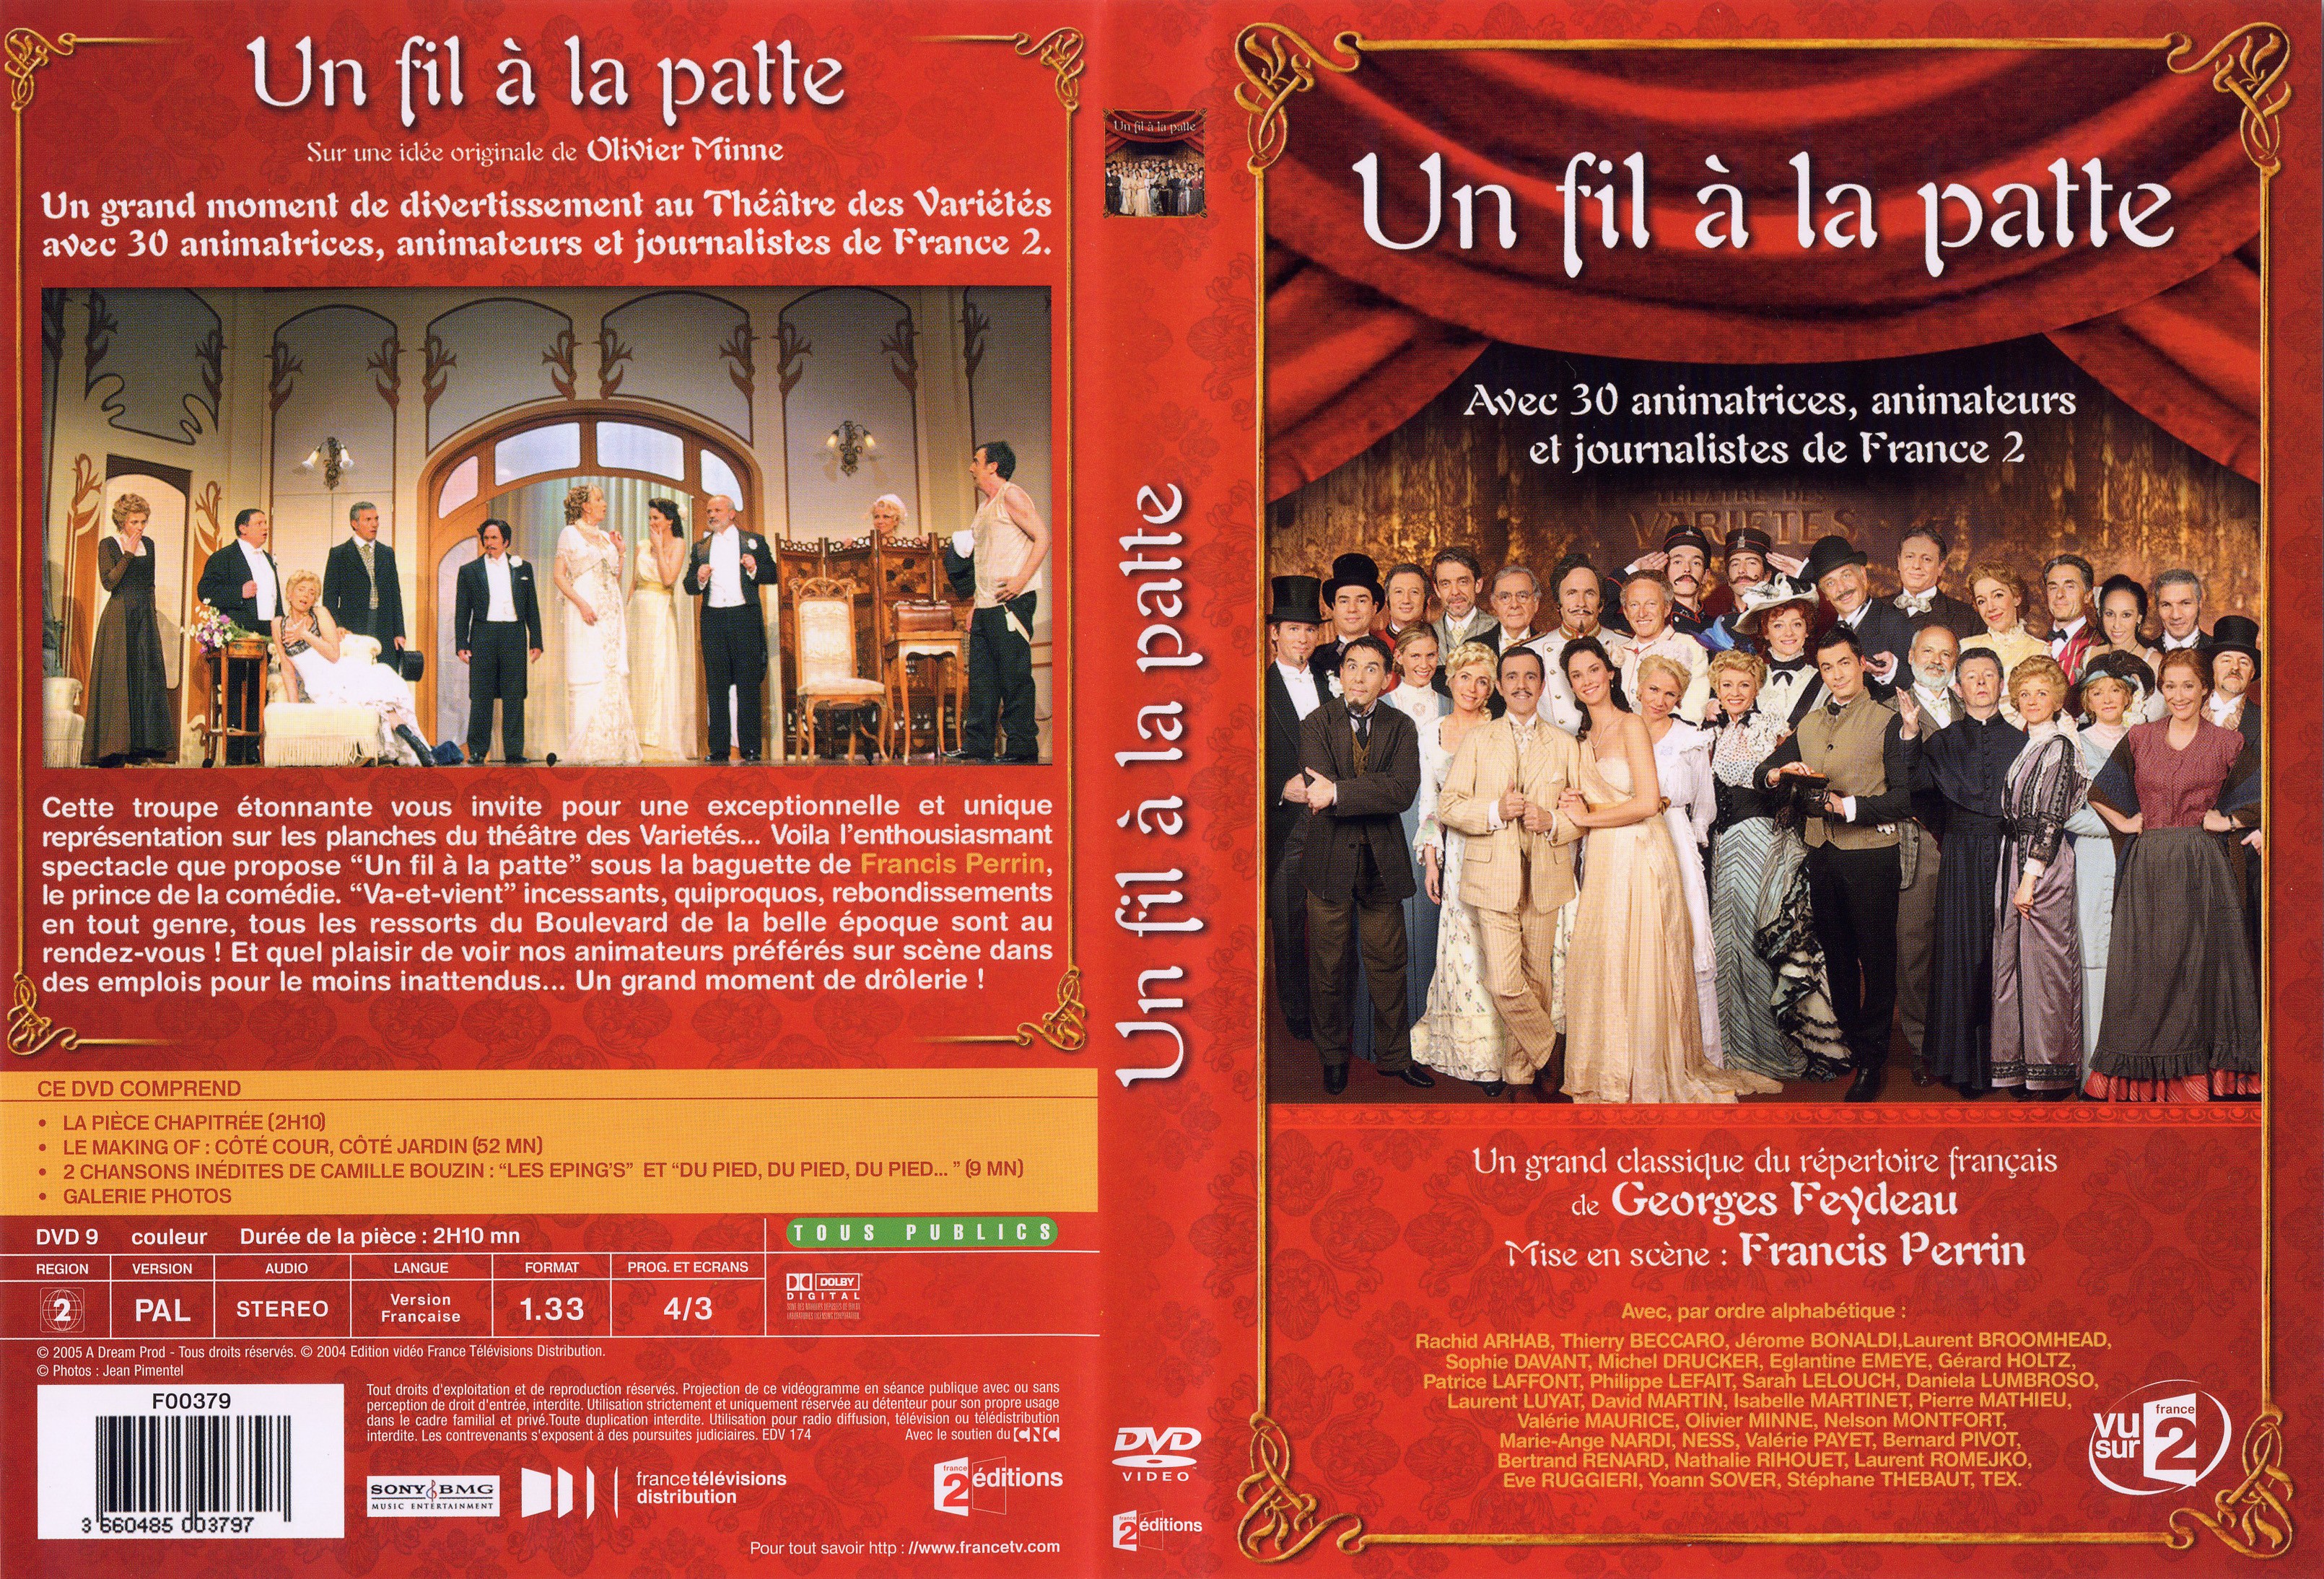 Jaquette DVD Un fil  la patte (Thatre)